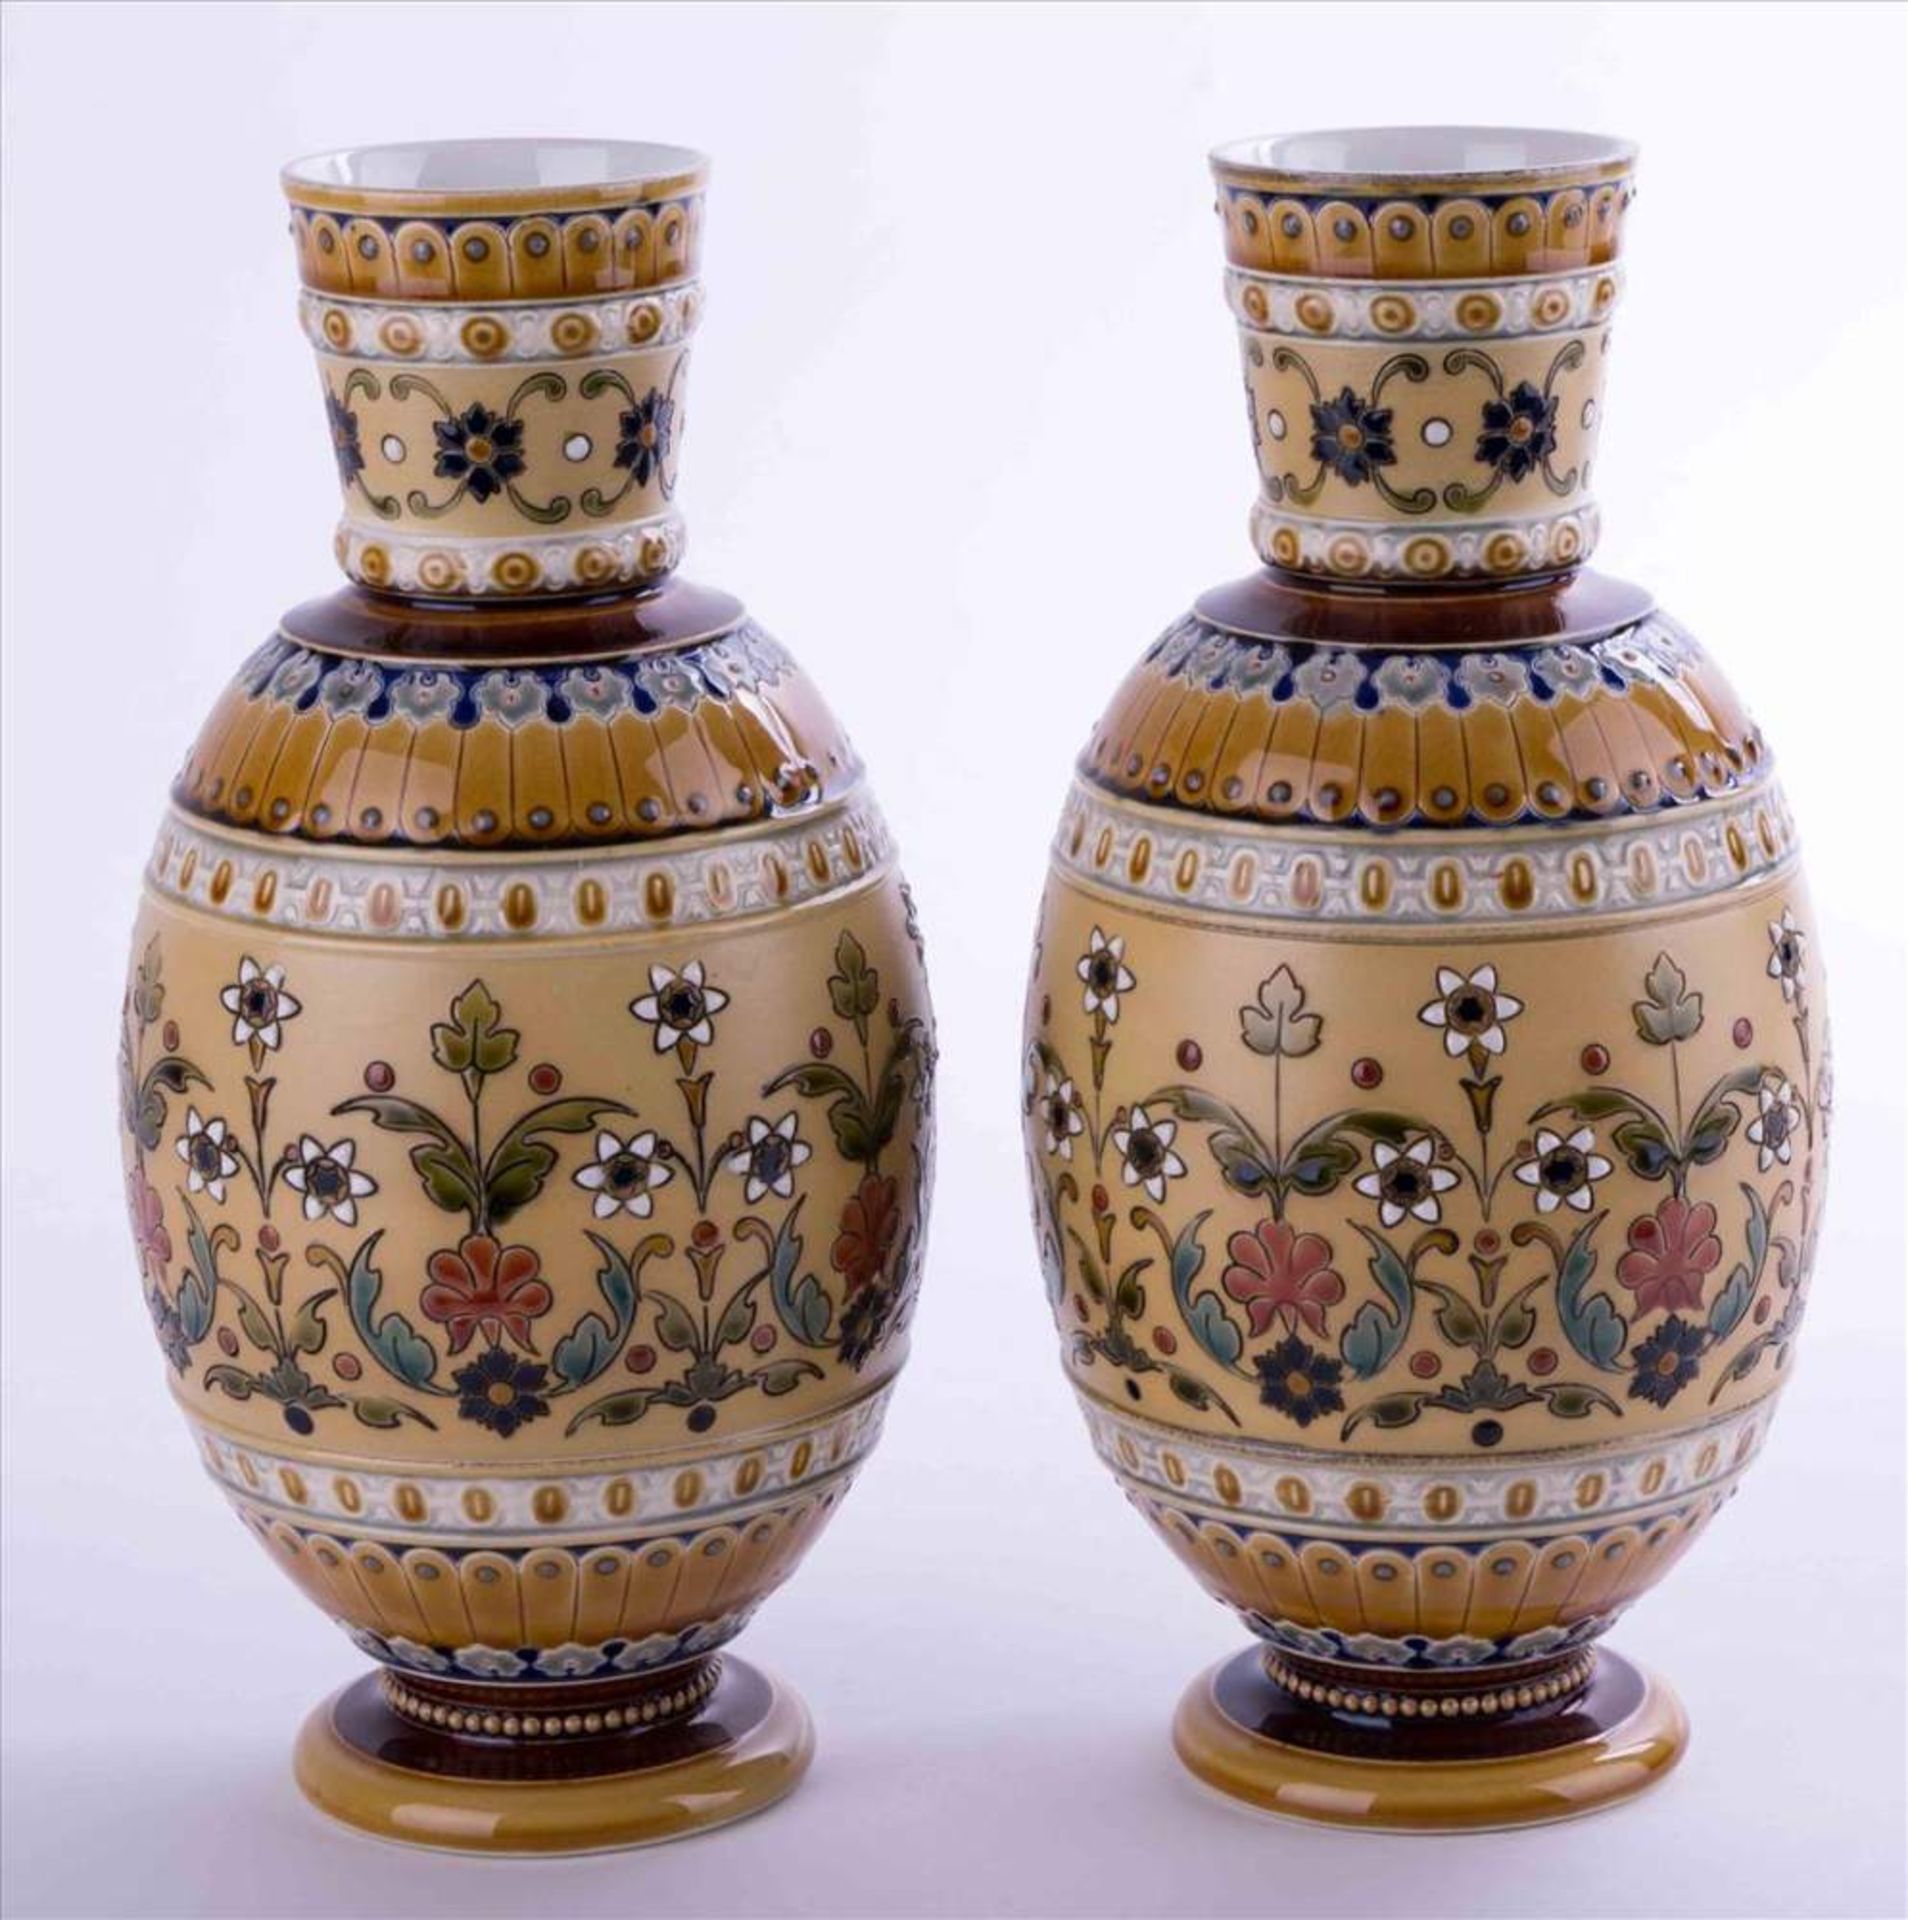 Vasenpaar, Villeroy & Boch, Mettlach um 1911 / Pair of vases, Villeroy & Boch, Mettlach about 1911